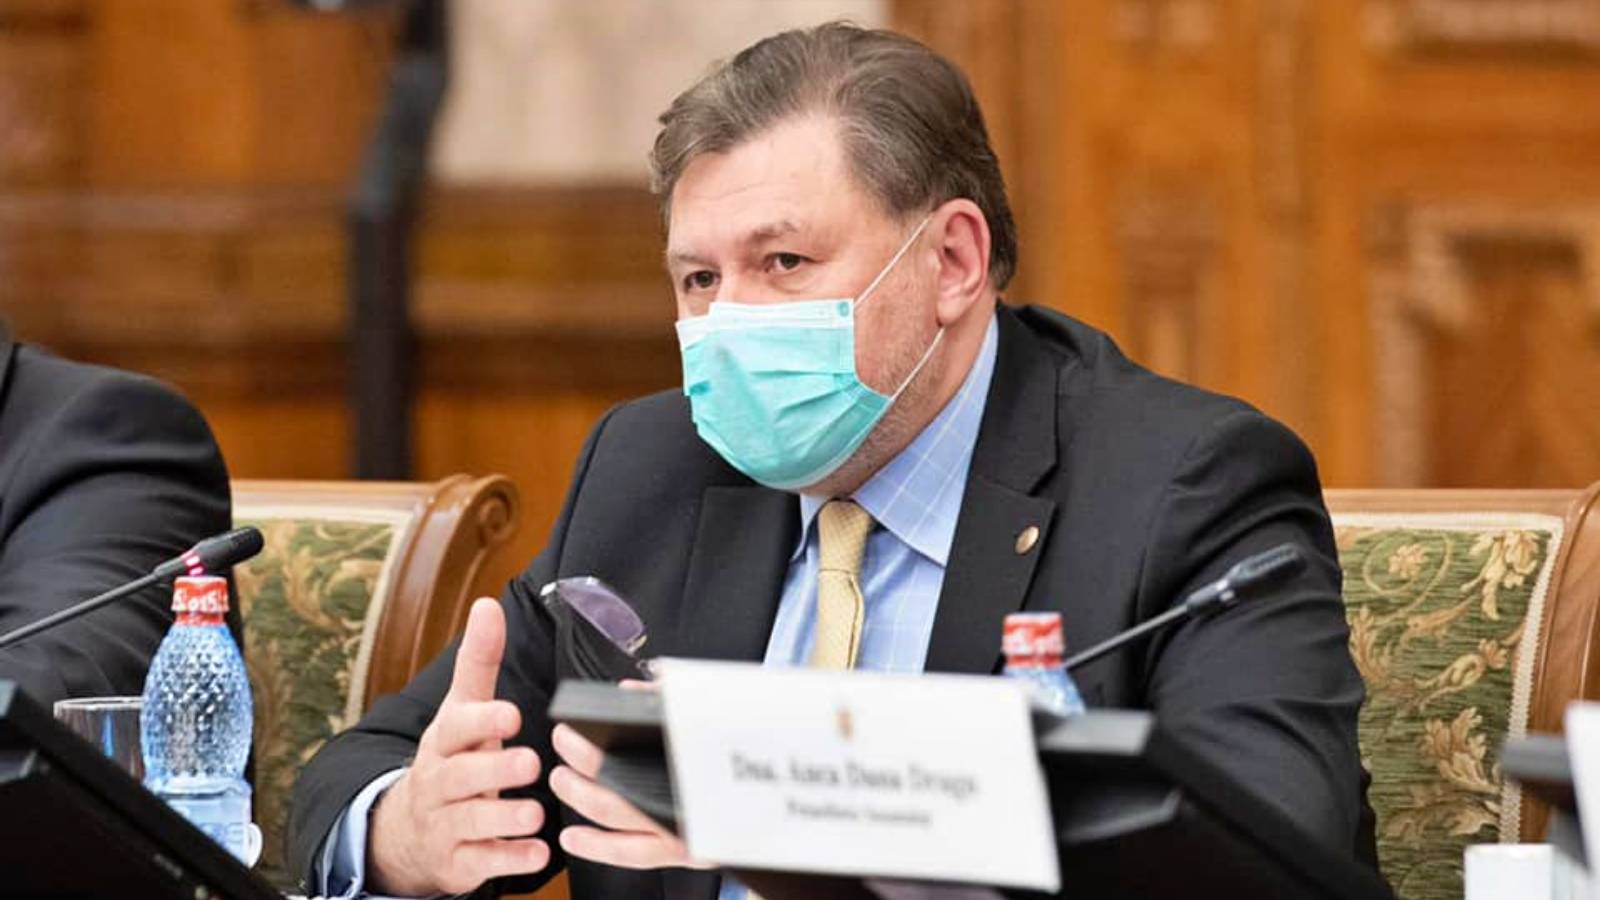 Der Gesundheitsminister gibt das letzte Mal bekannt, wann er die Beschränkungen für die Erkrankung aufhebt